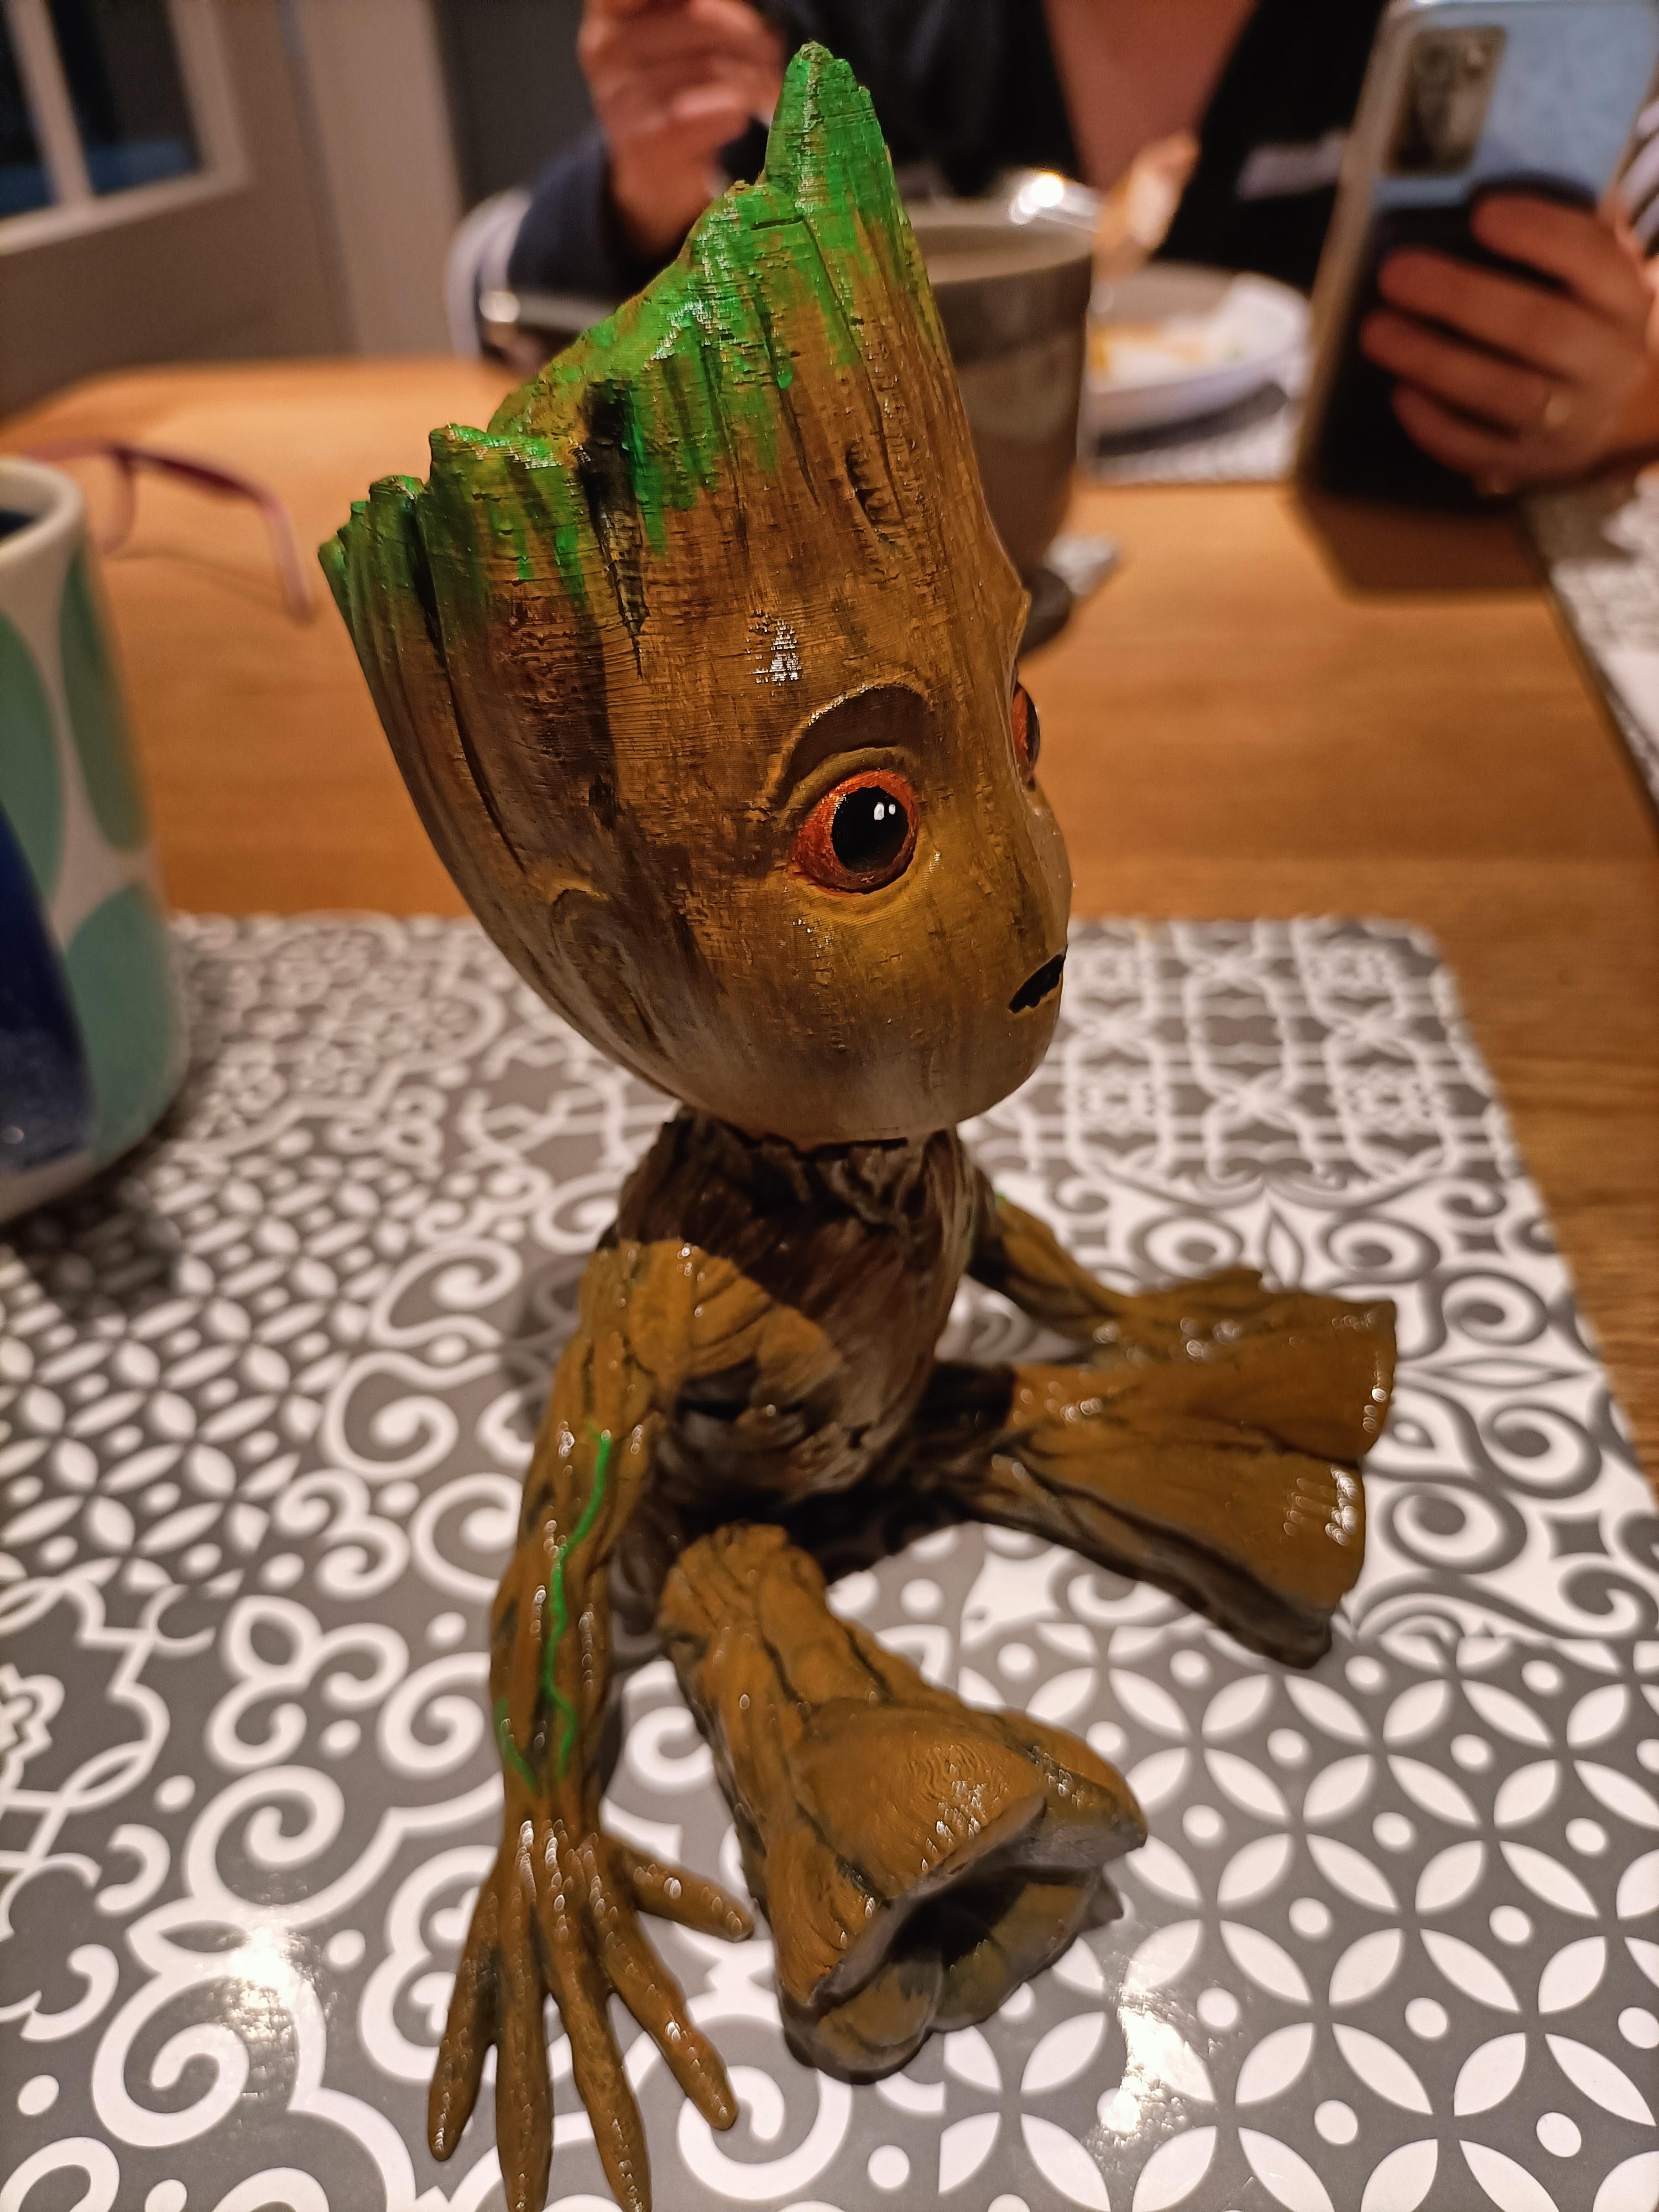 Baby Groot 3d model